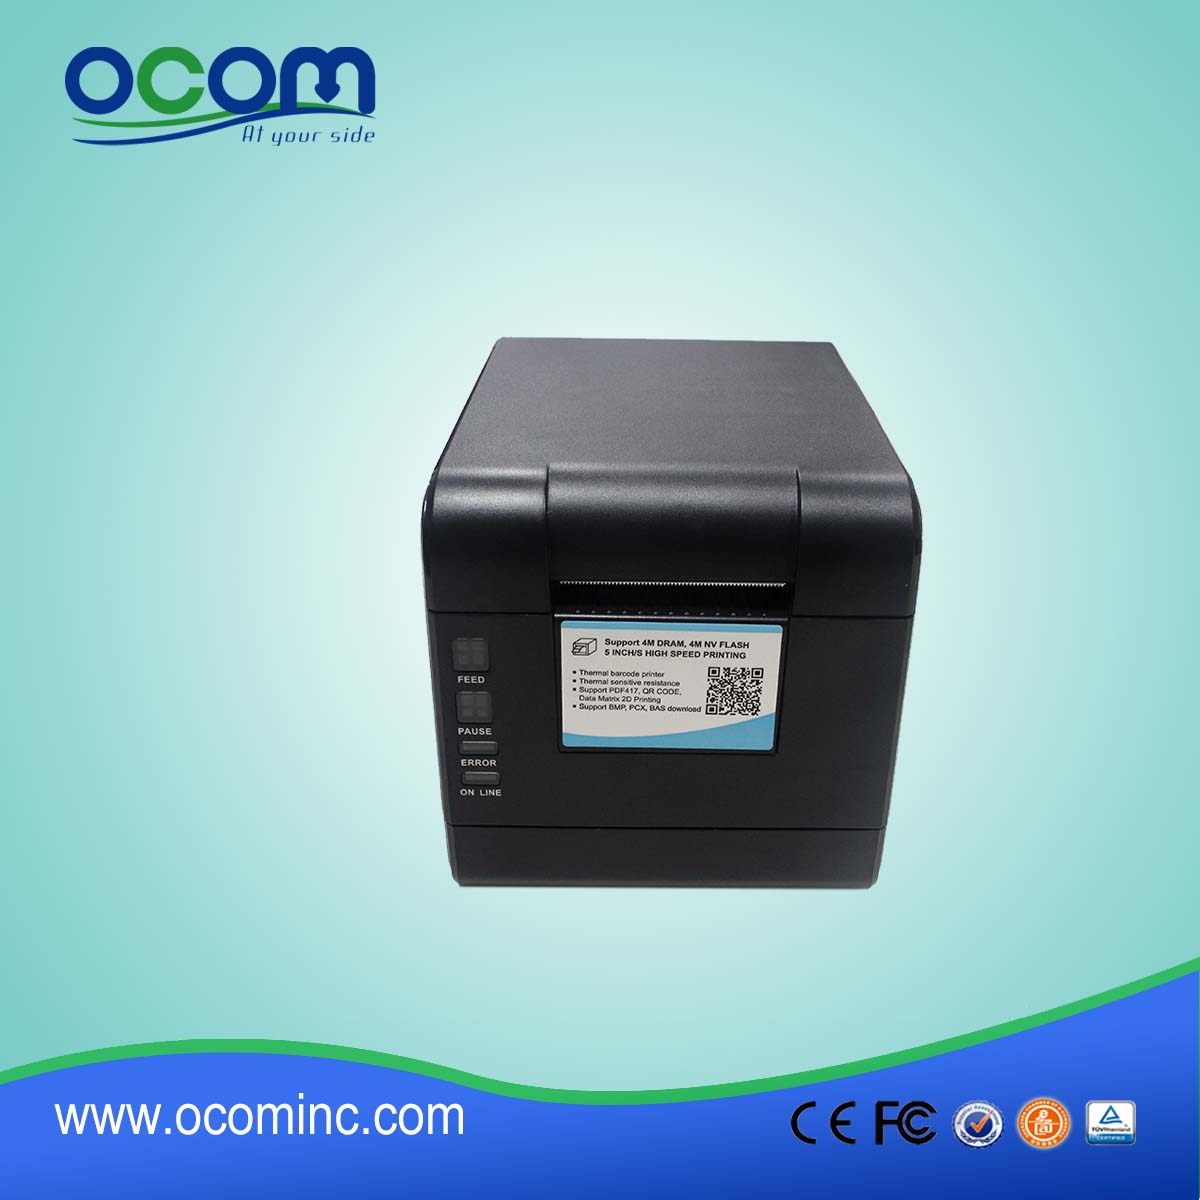 OCBP-006-U 2 ιντσών Direct Thermal Label Printer